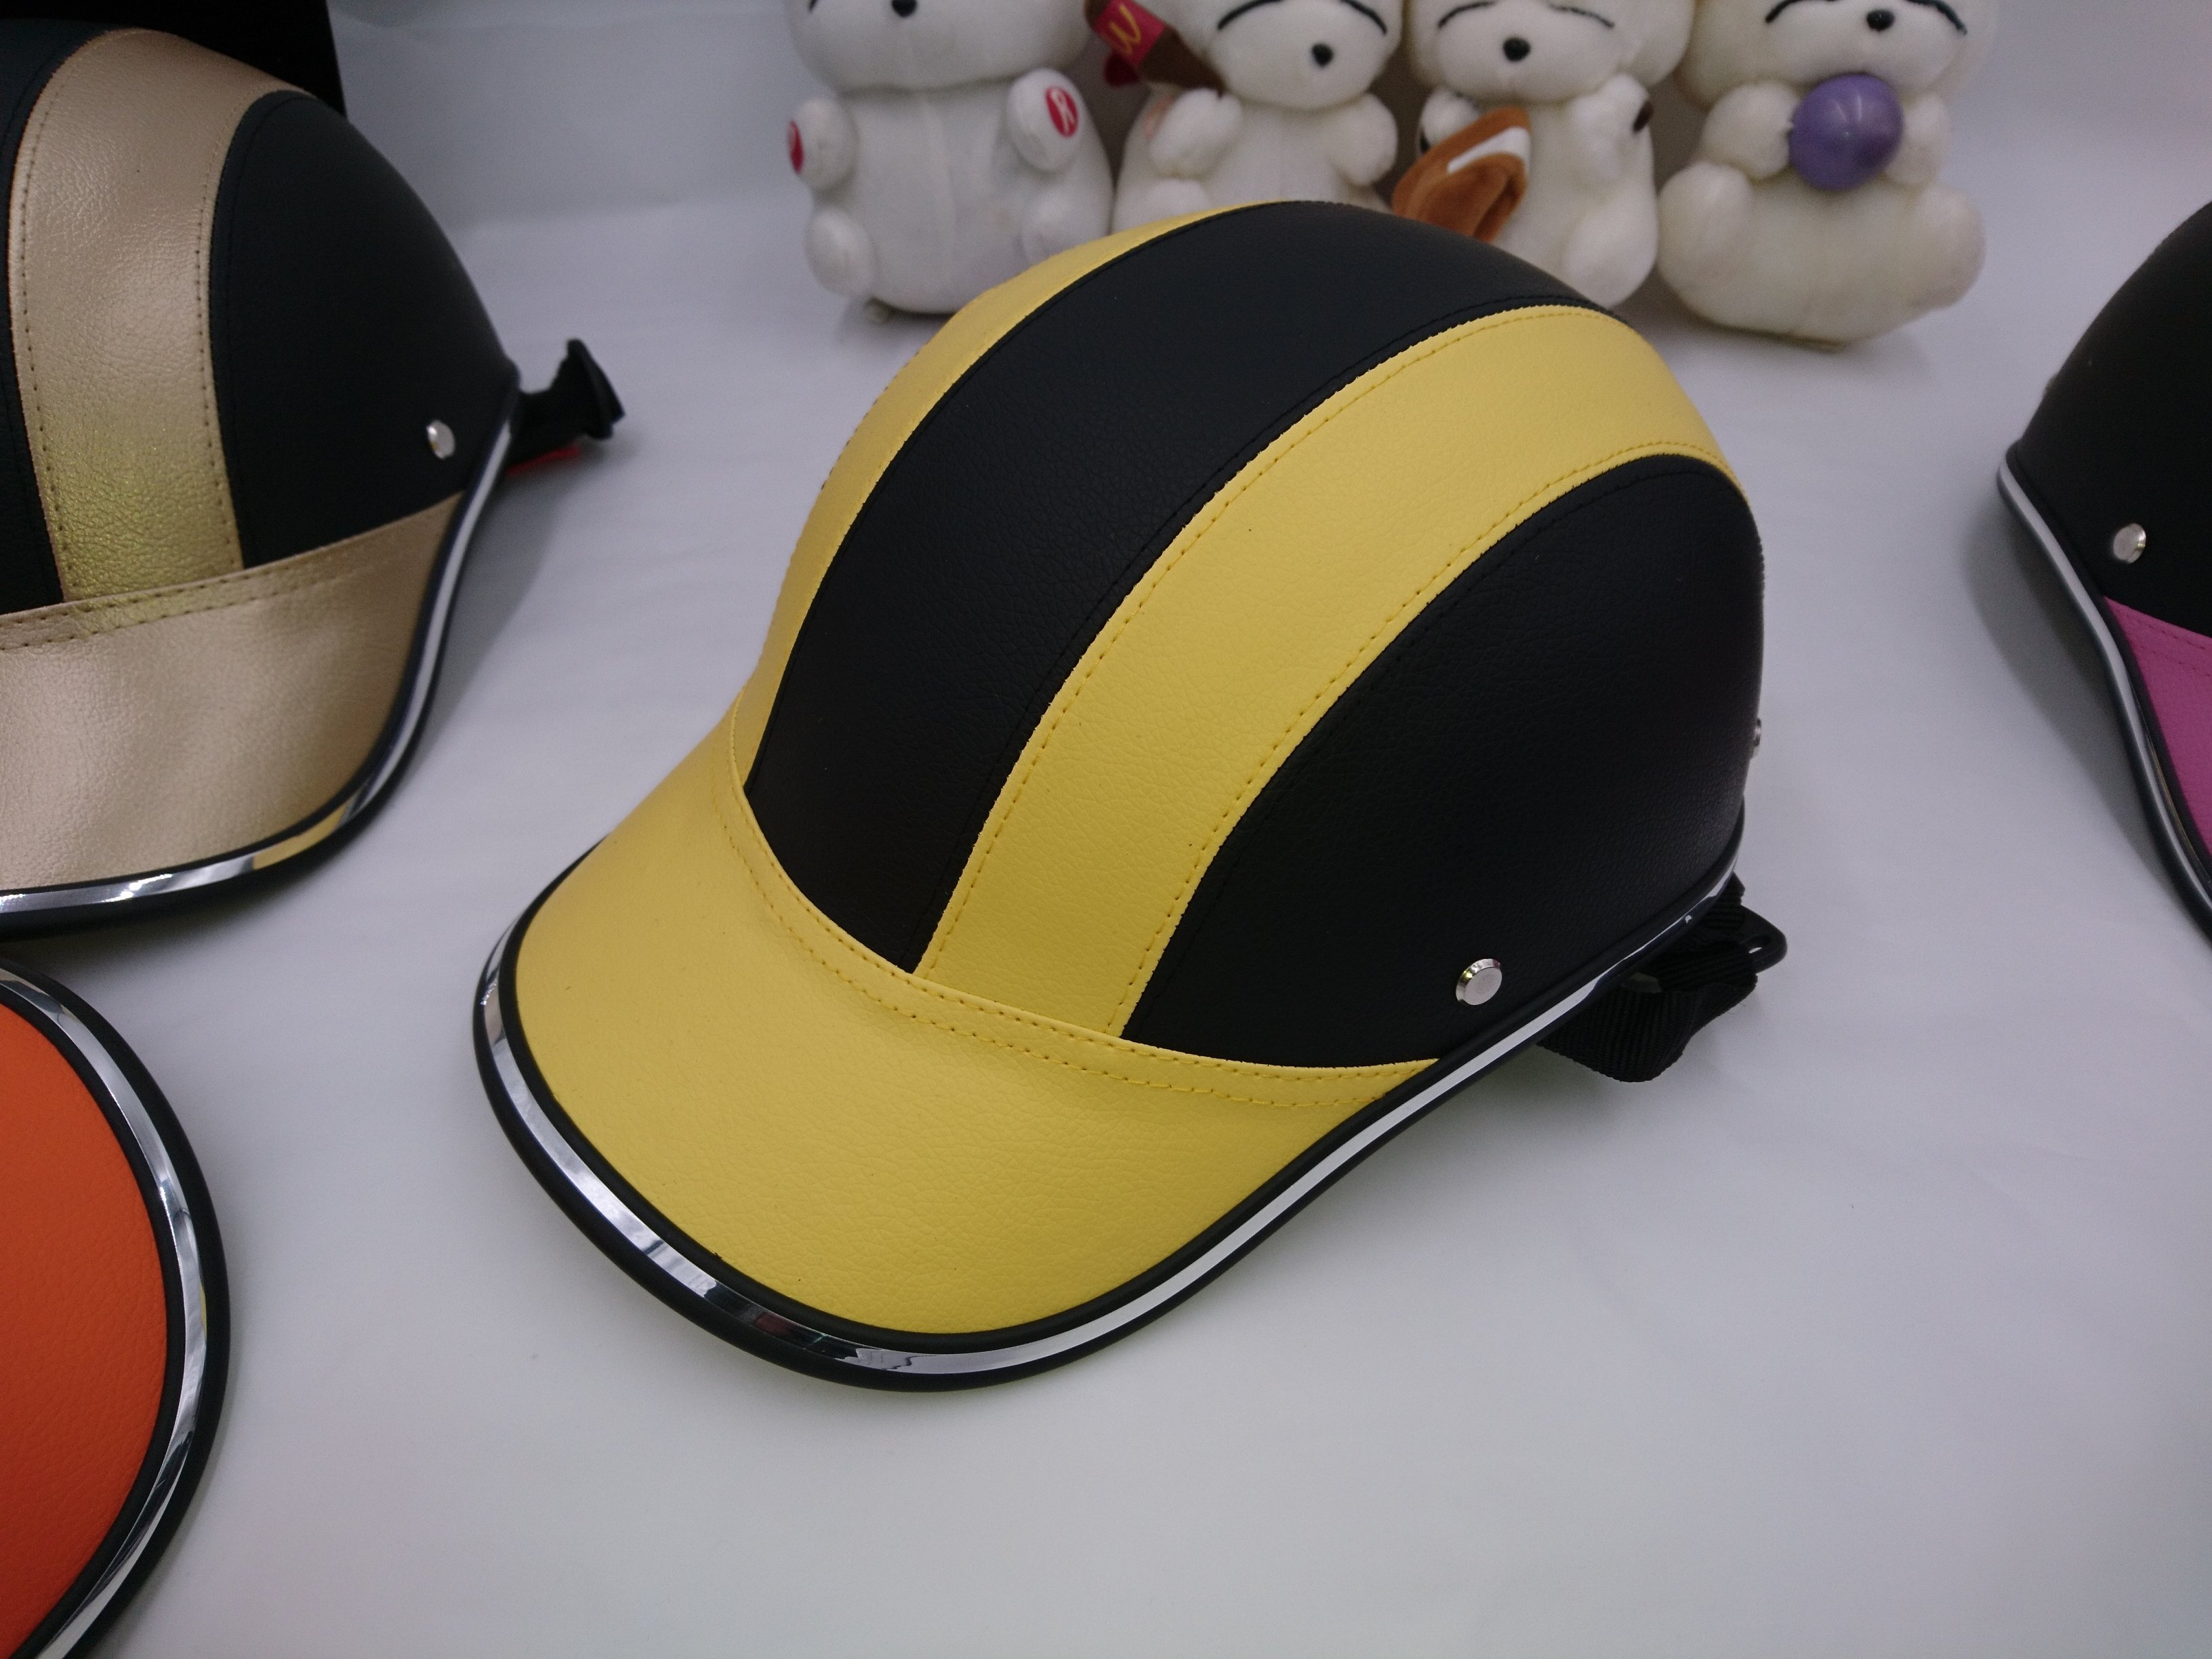 安全帽 2018最新款 電動車、電動腳踏車半罩安全帽 個性輕便棒球式安全帽